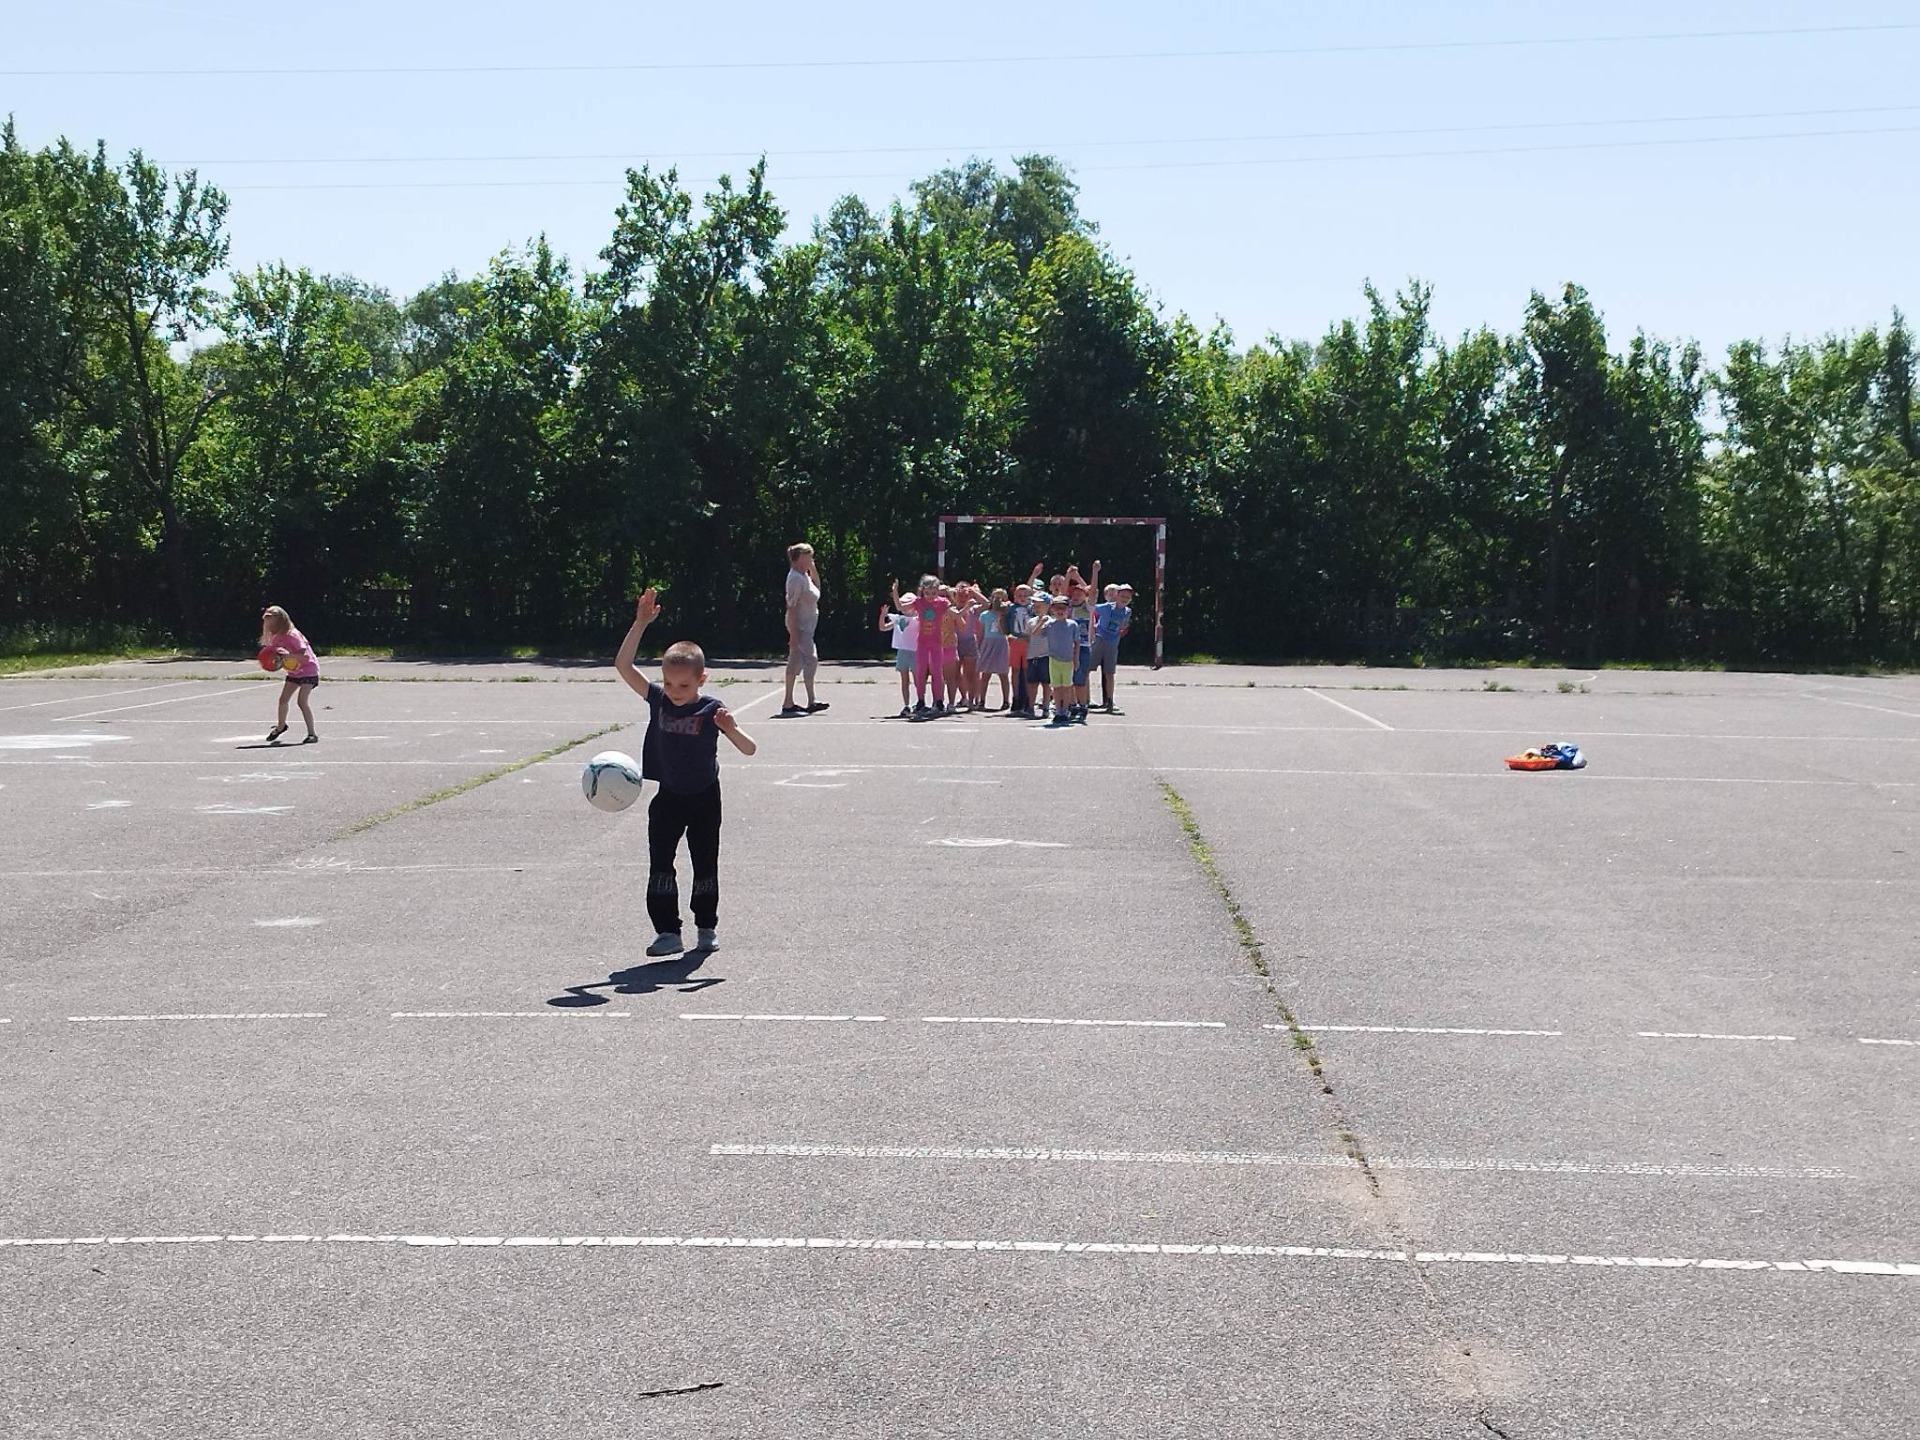 Przedszkolaki biorą udział w zabawach sportowych na szkolnym boisku